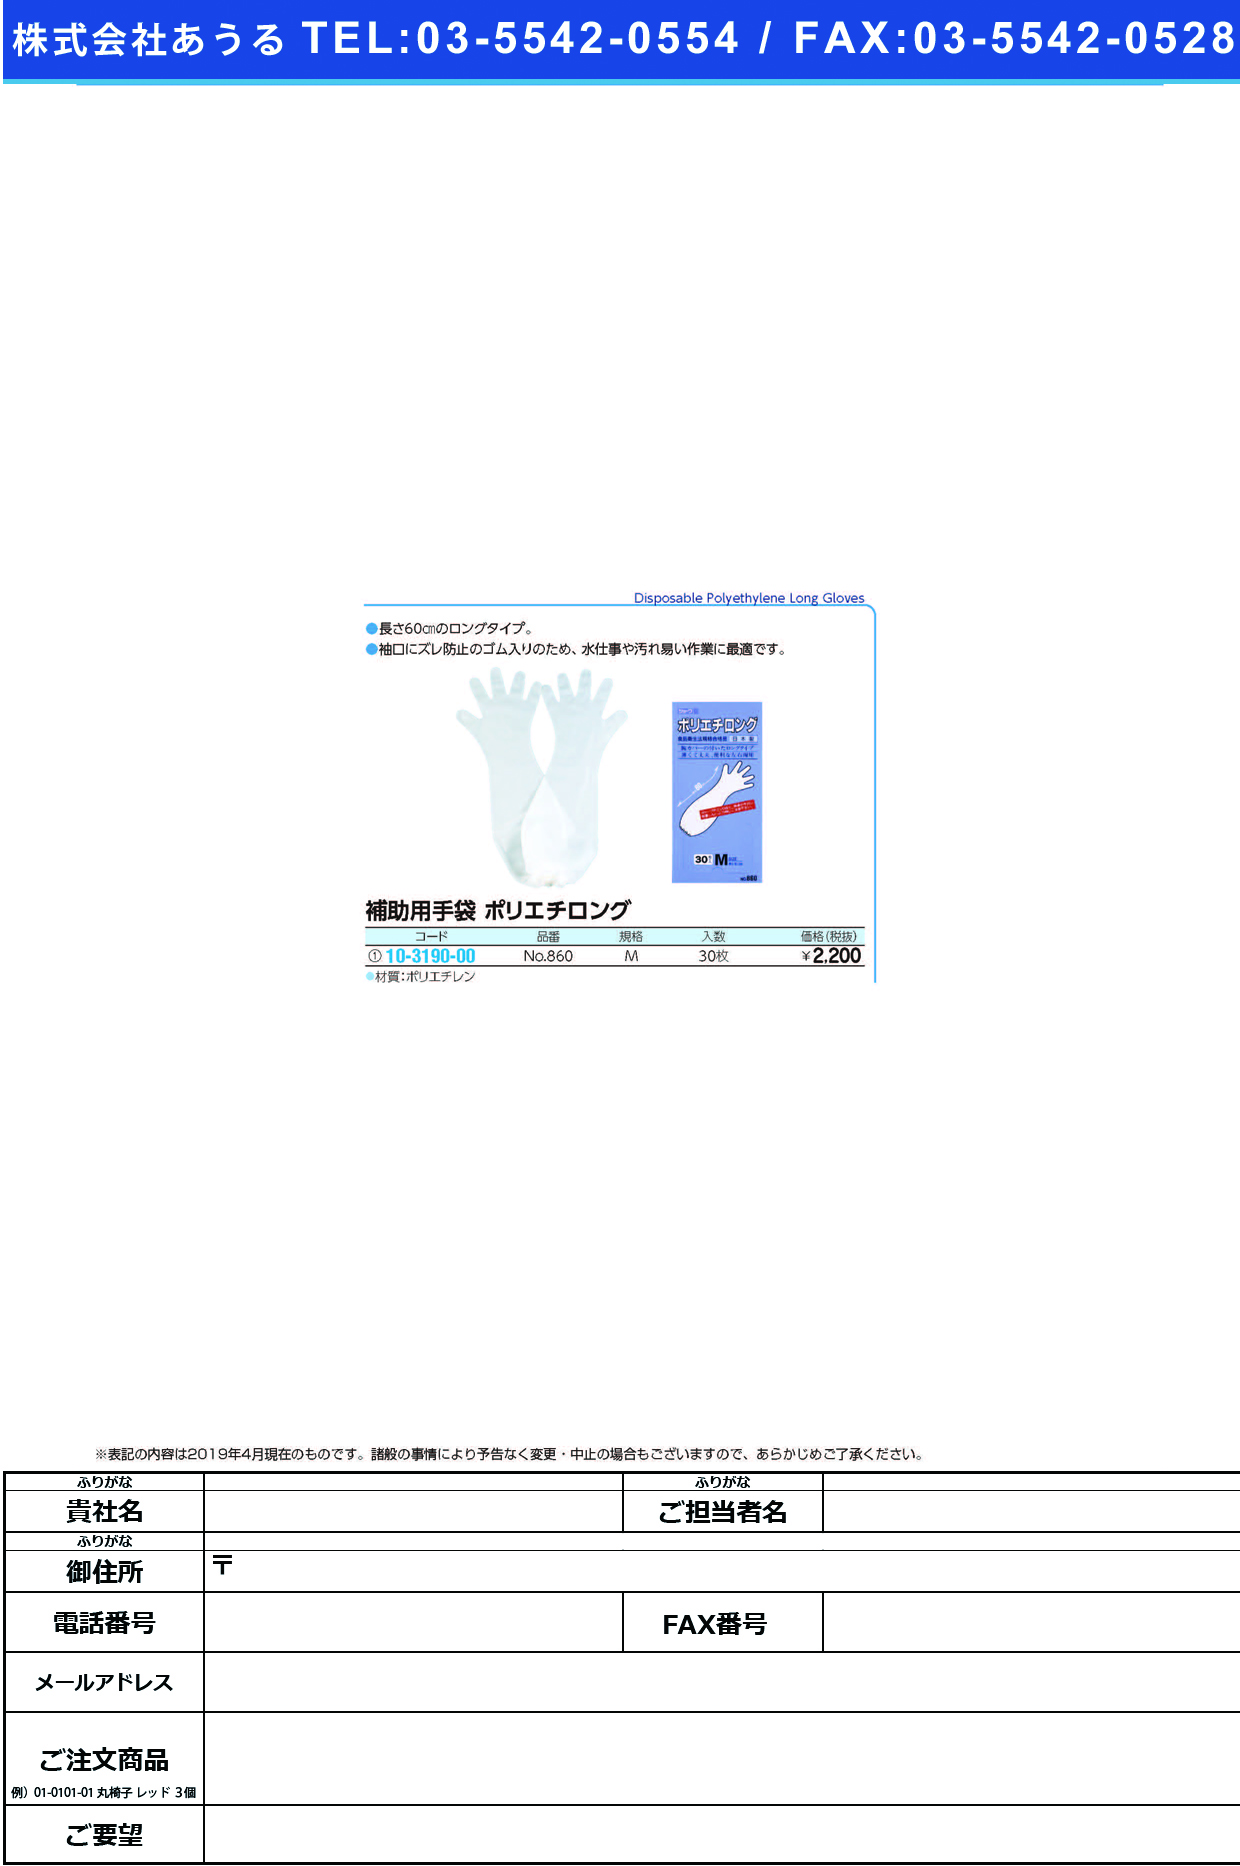 (10-3190-00)ポリエチロング NO.860(M)30ﾏｲｲﾘ ﾎﾟﾘｴﾁﾛﾝｸﾞ【1箱単位】【2019年カタログ商品】